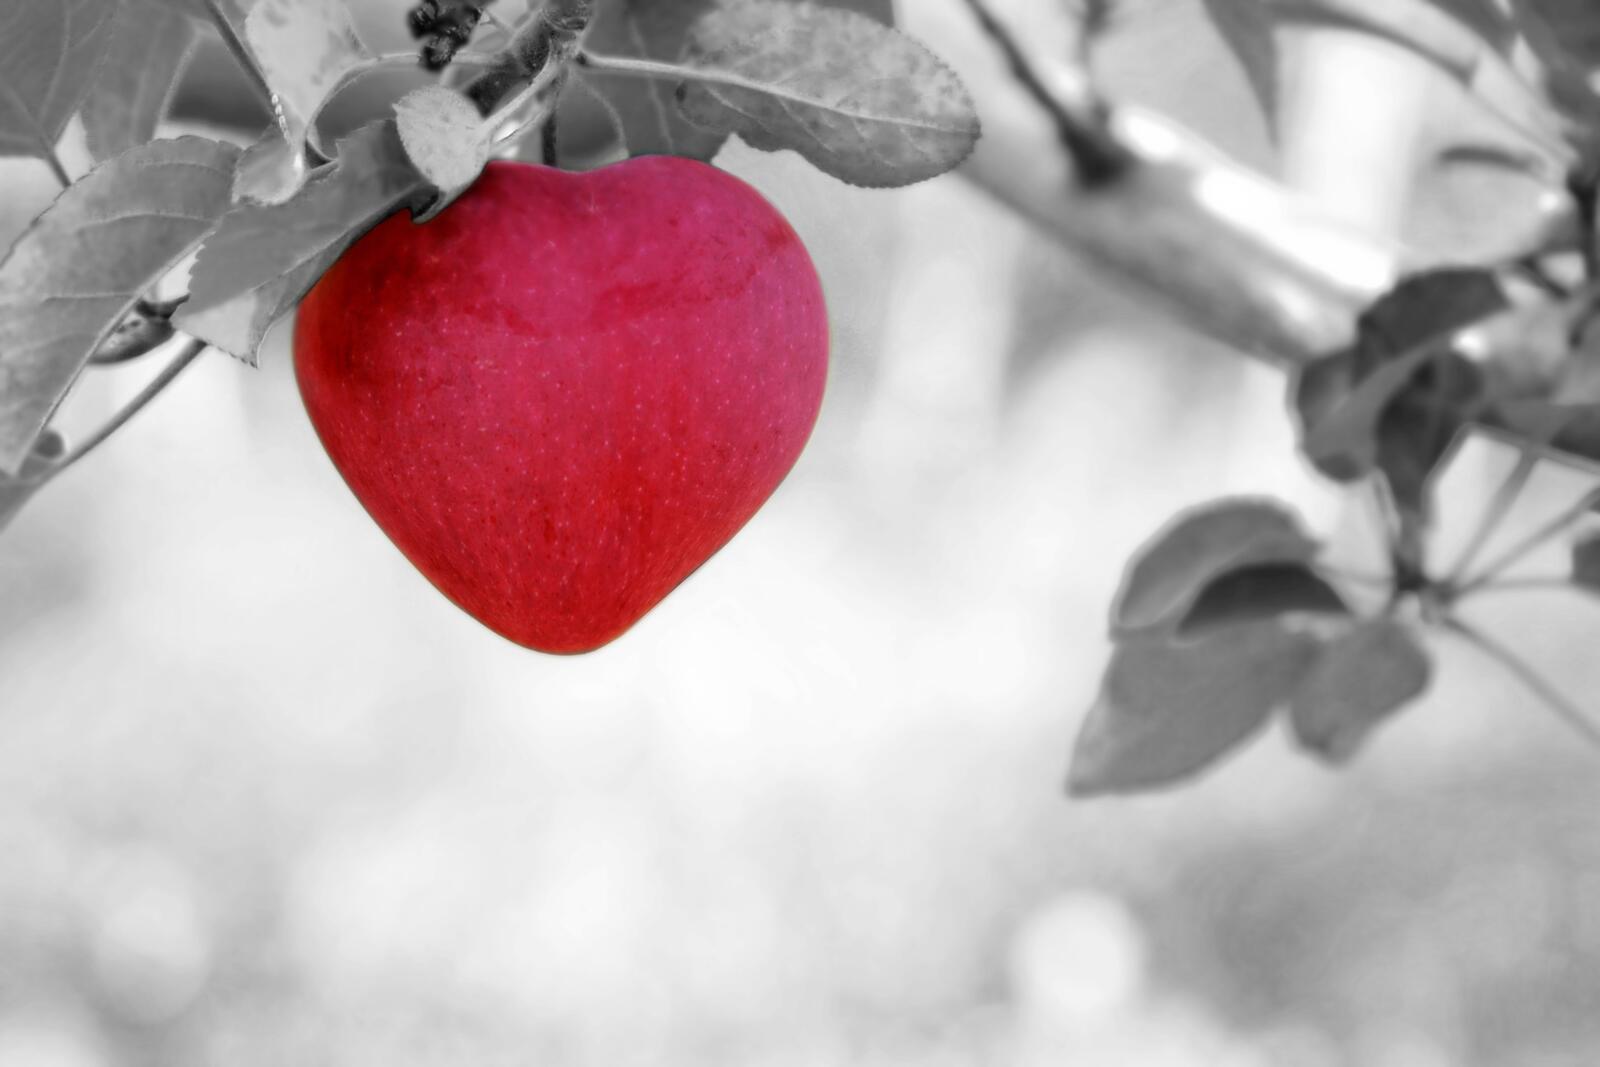 Бесплатное фото Красное яблоко в виде сердца